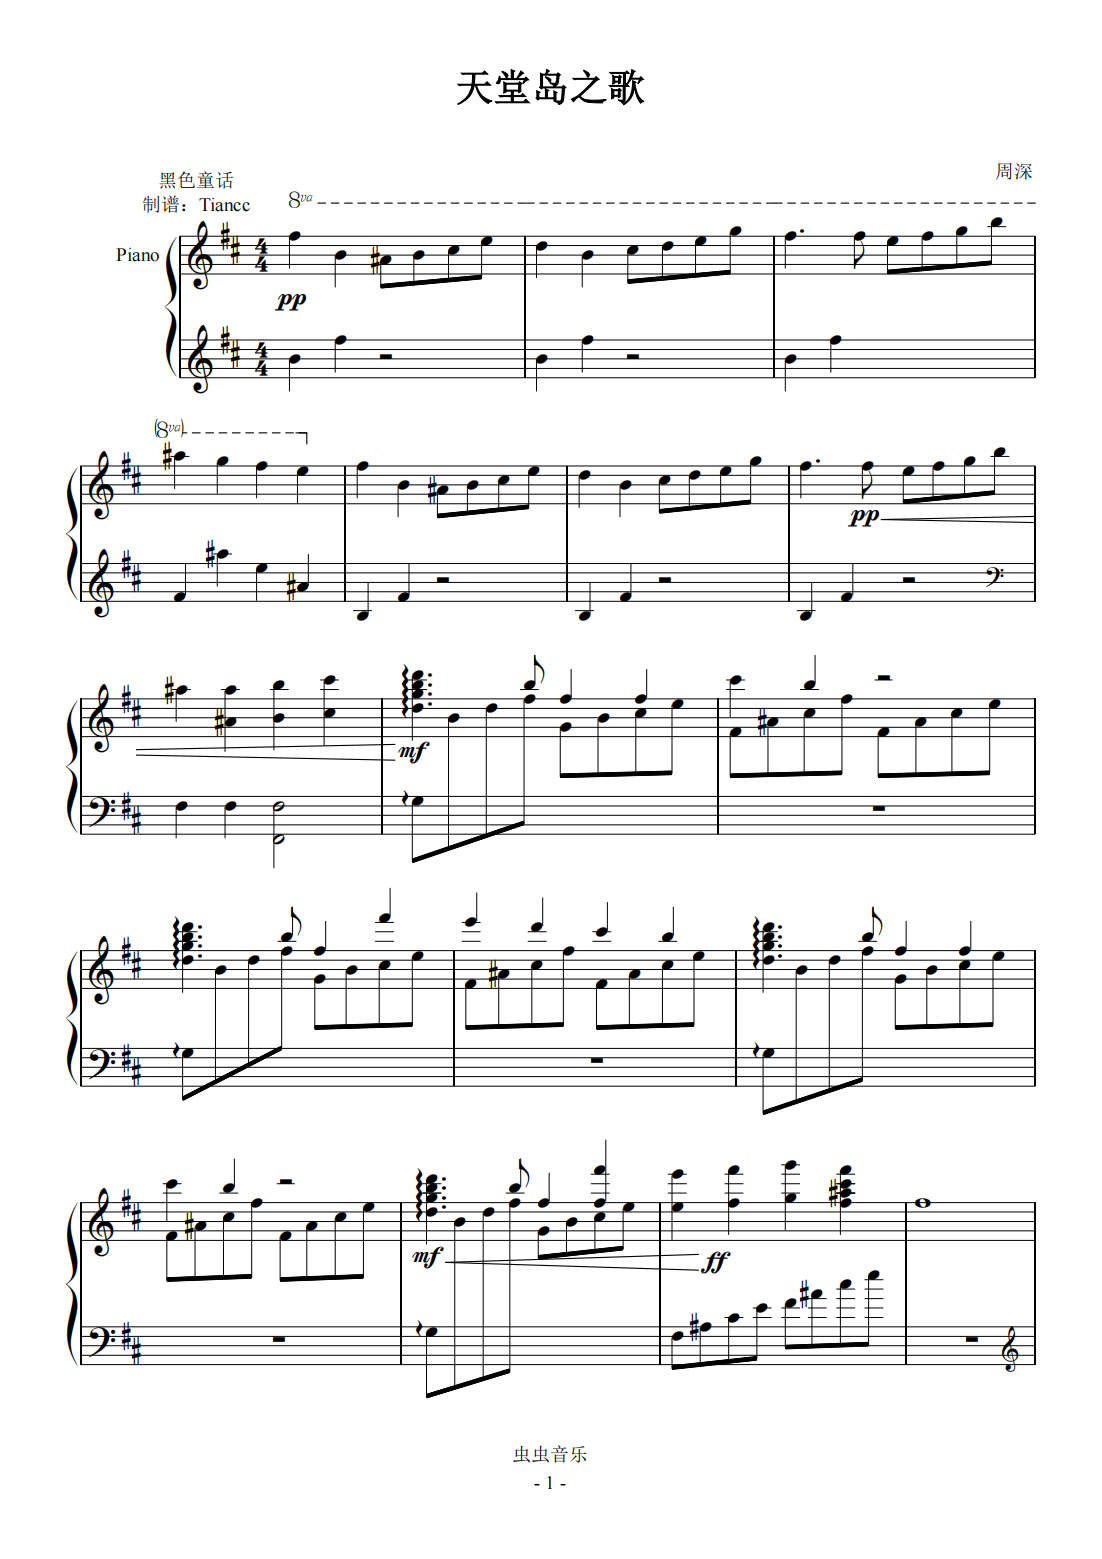 《天堂岛之歌》优化版,599难度,简单多了~钢琴谱